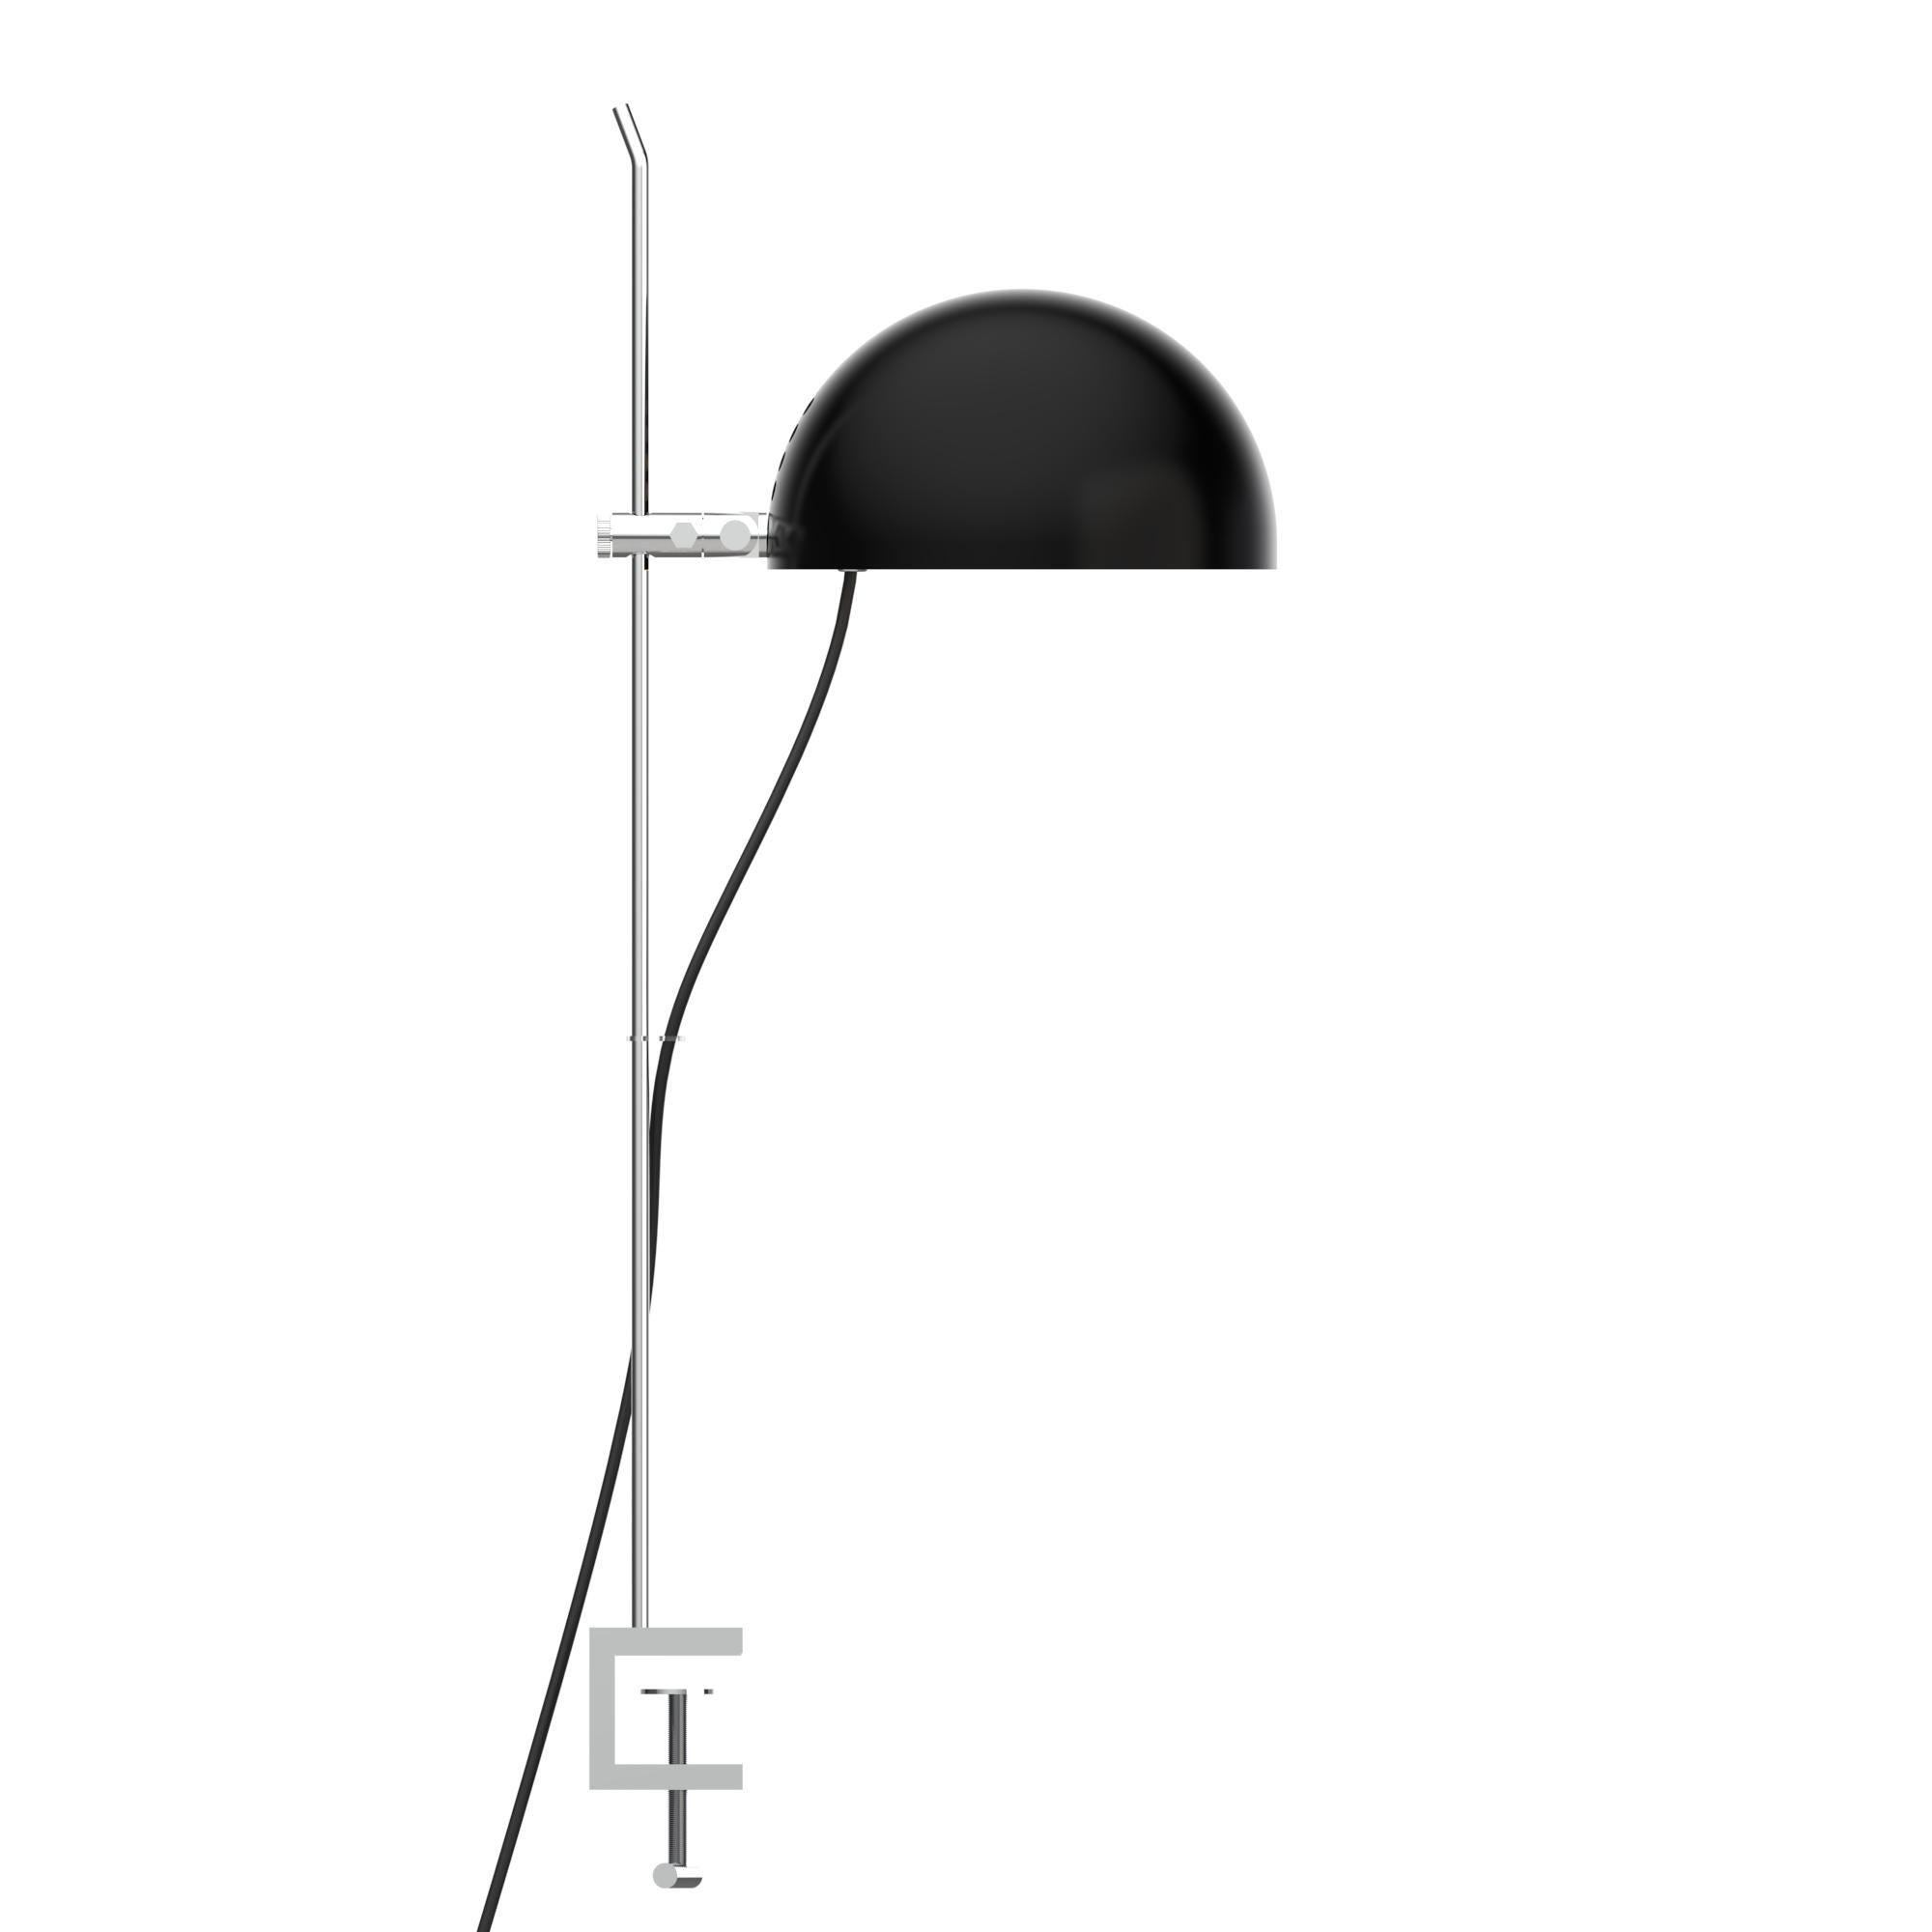 Alain Richard 'A22' Desk Lamp in Chrome for Disderot For Sale 8